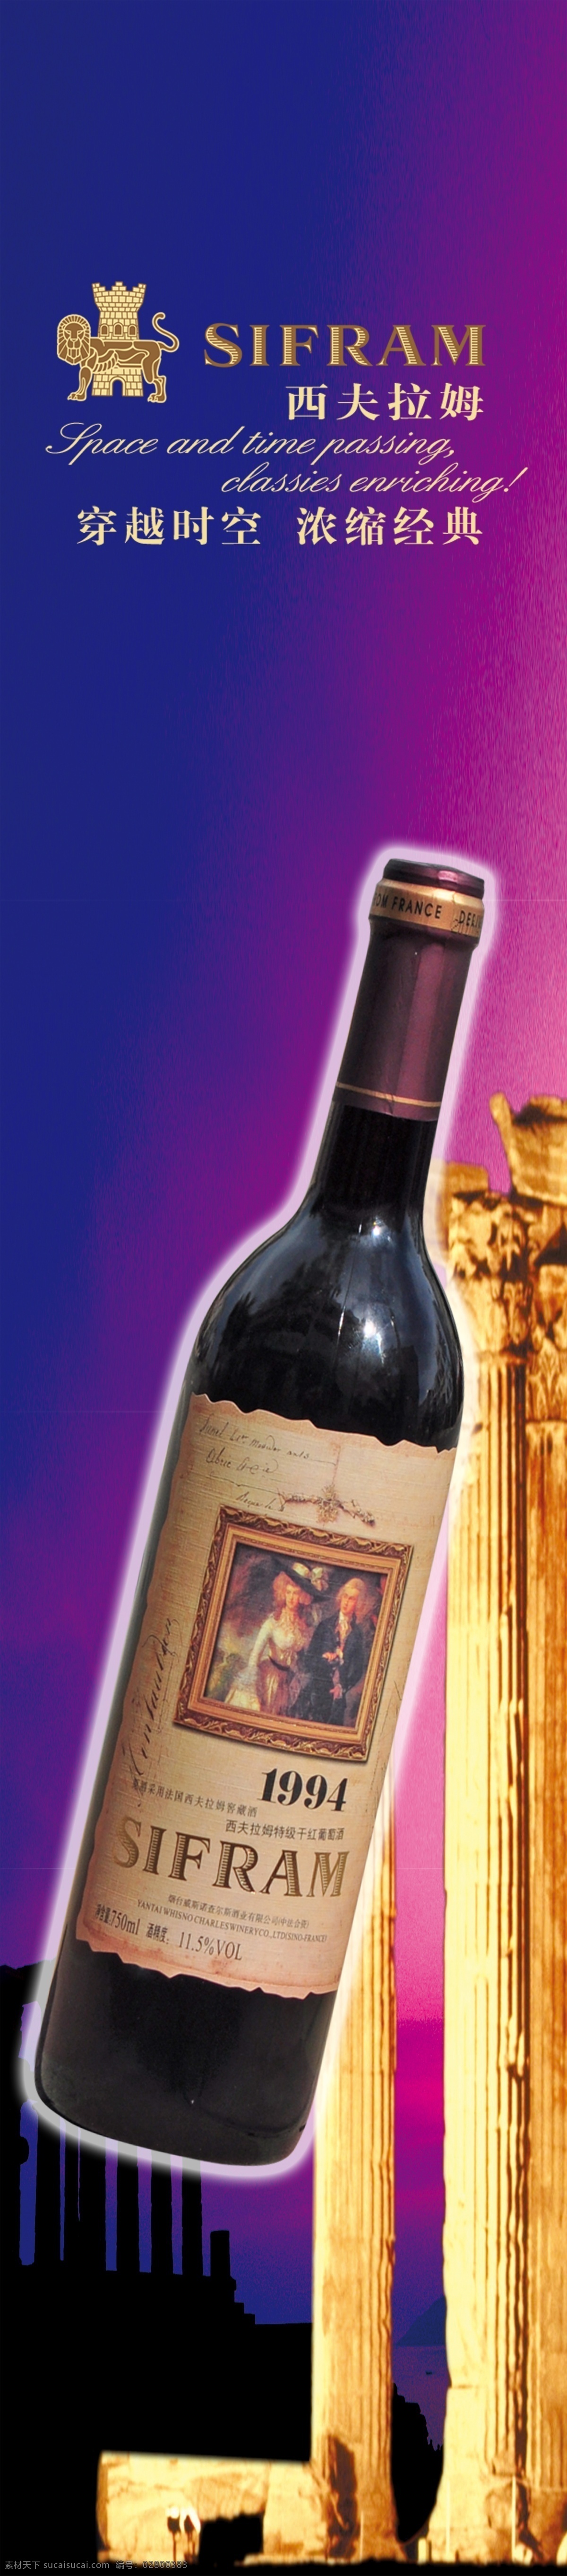 西夫 拉姆 1994 葡萄酒 酒类广告 广告设计模板 源文件